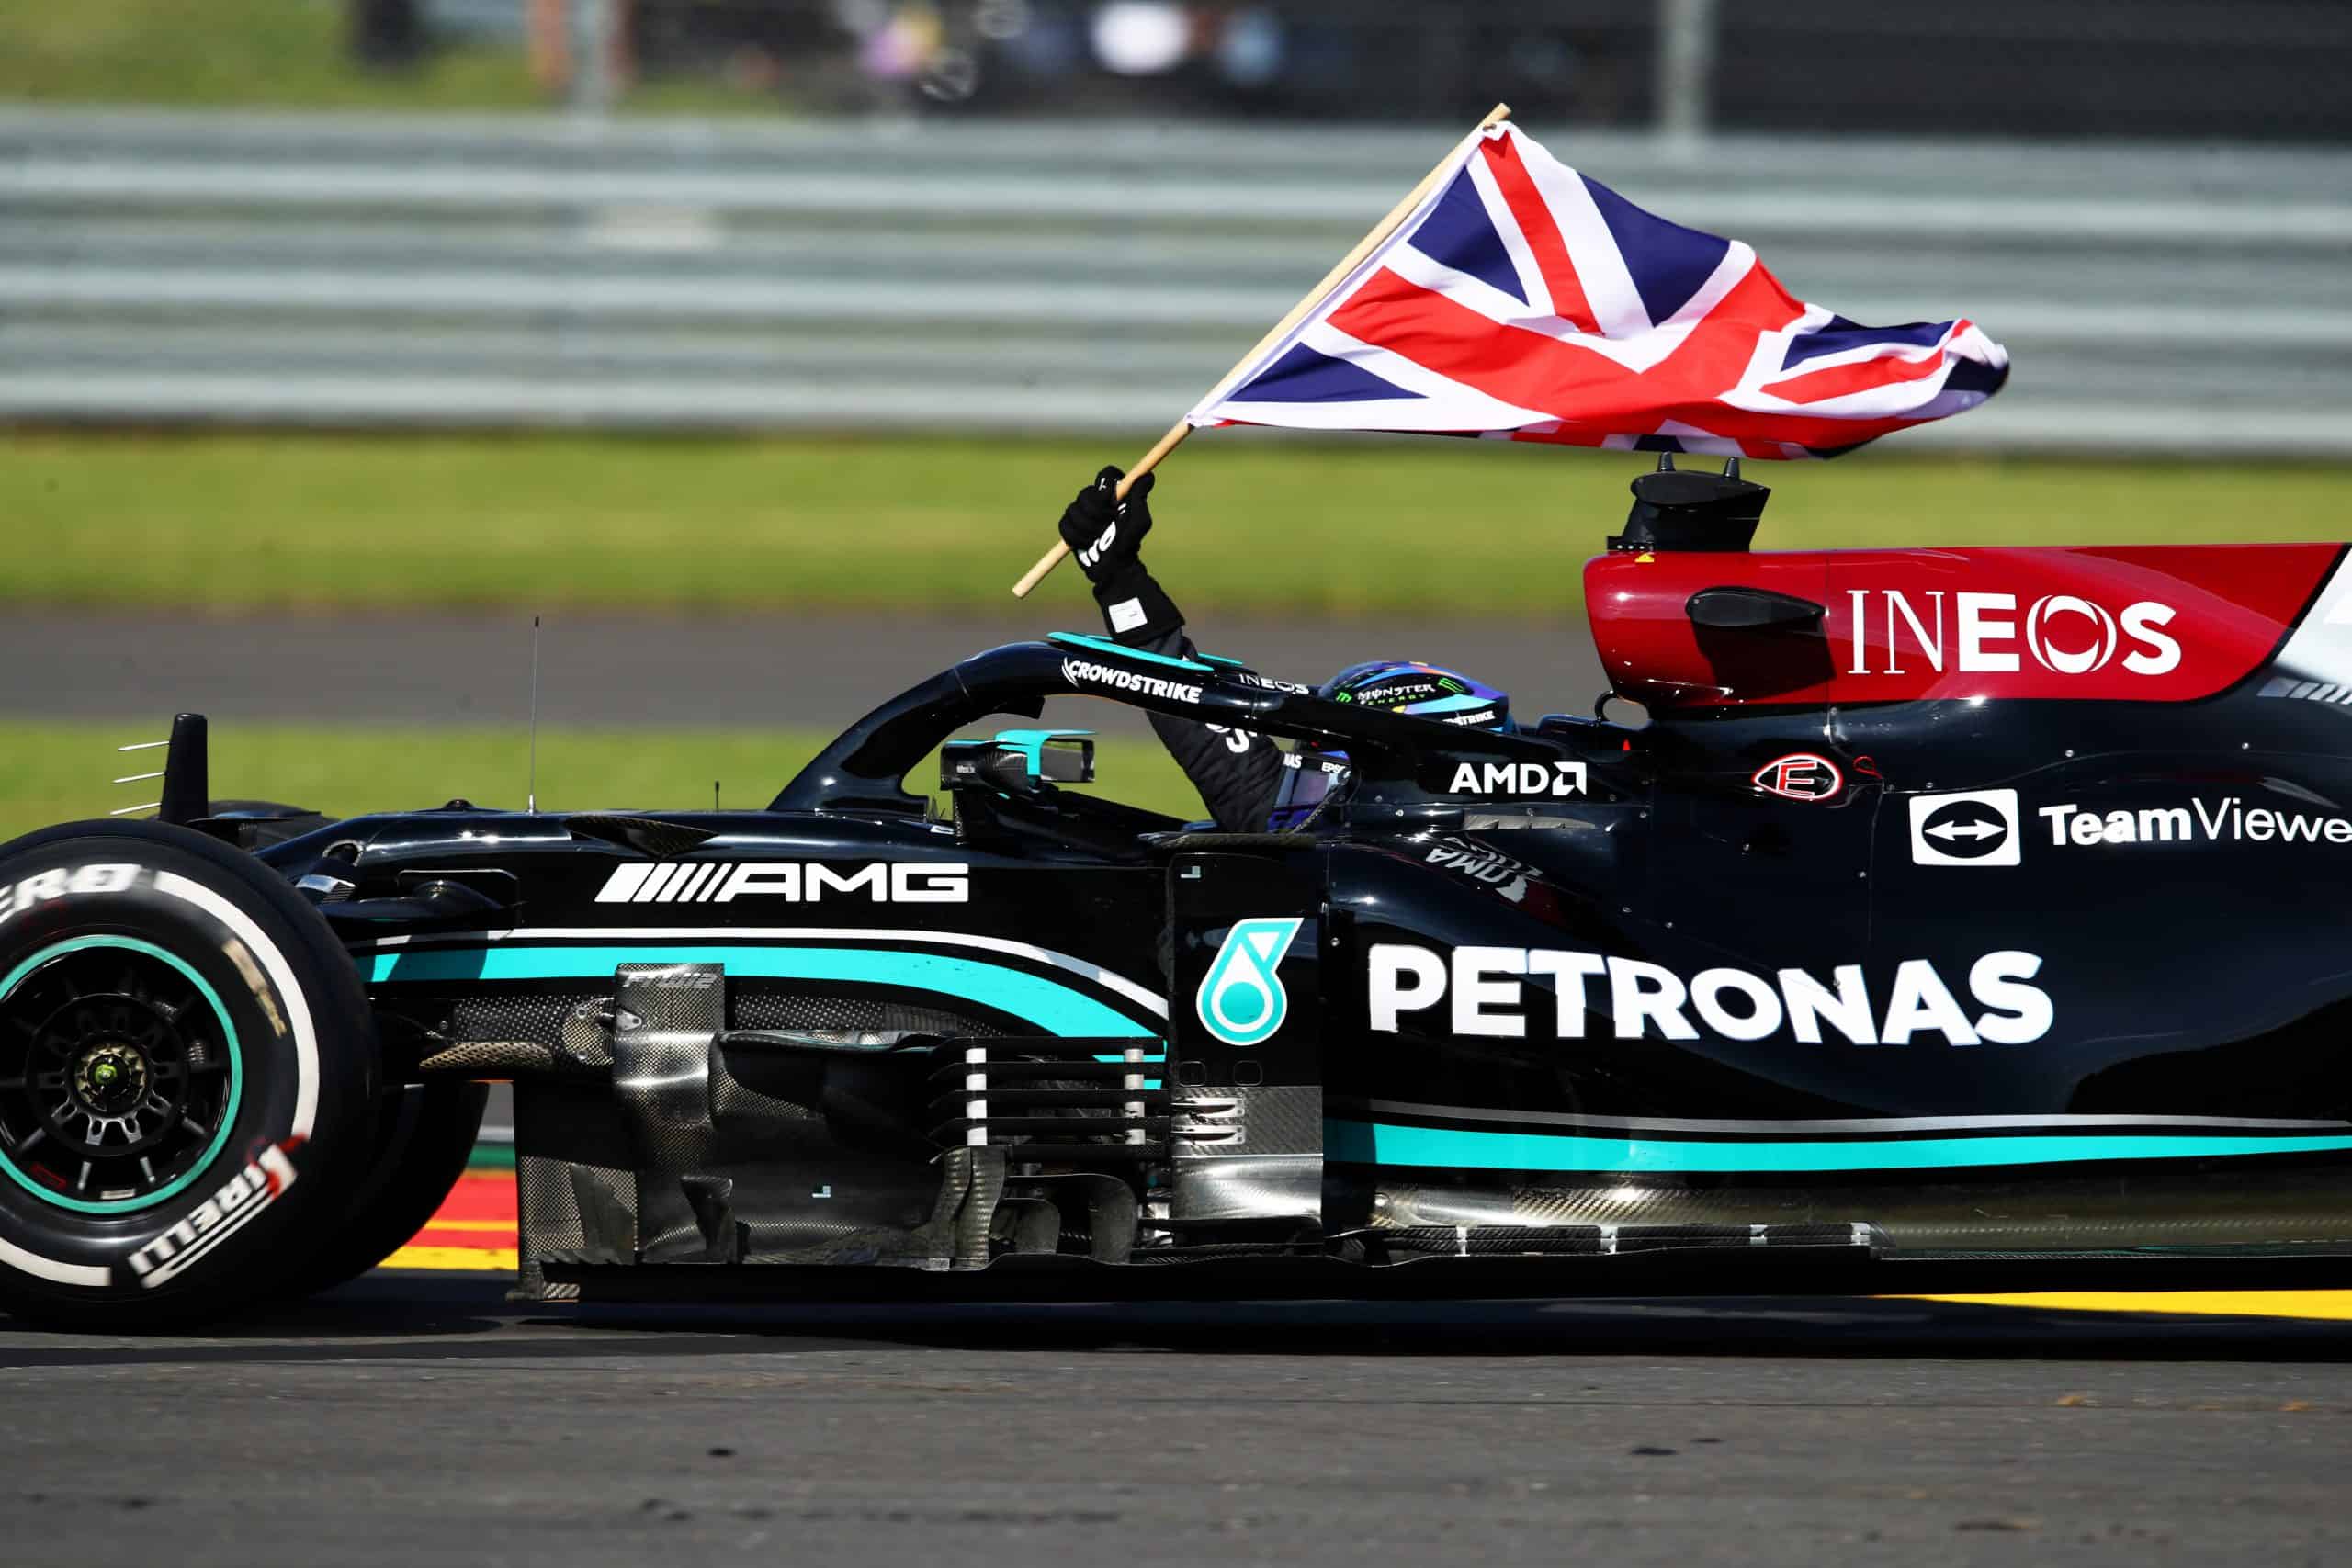 Formuła 1: Lewis Hamilton wygrał Grand Prix Wielkiej Brytanii po wypadku Maxa Verstappena!